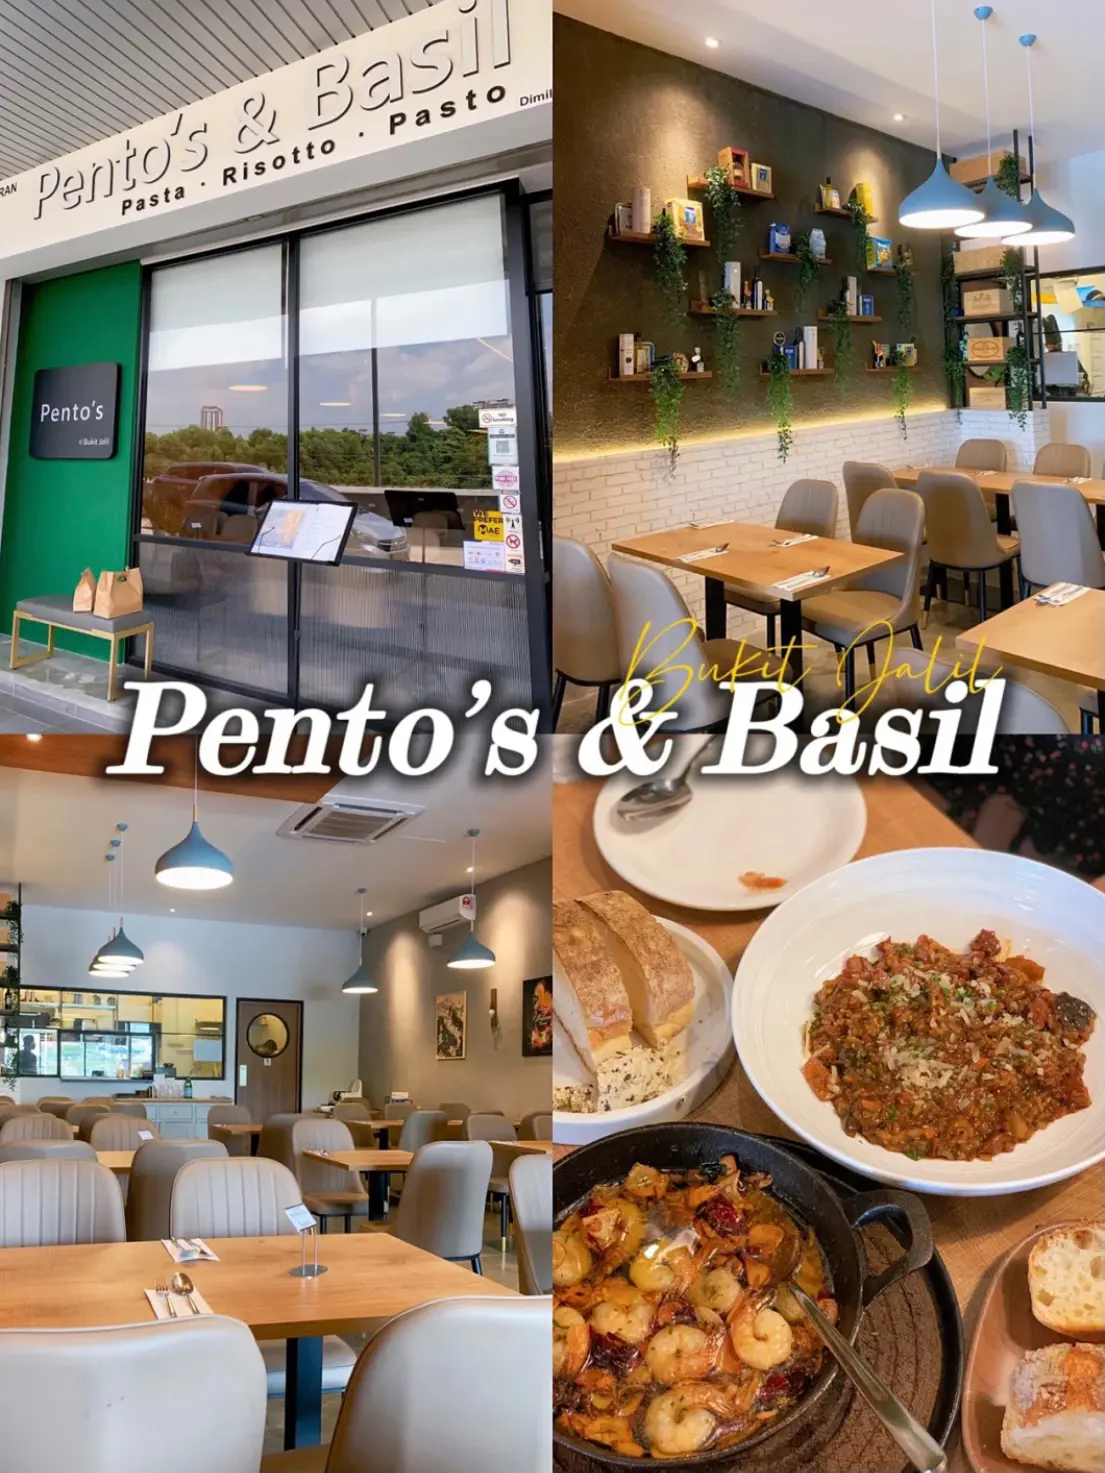 Pentos and basil